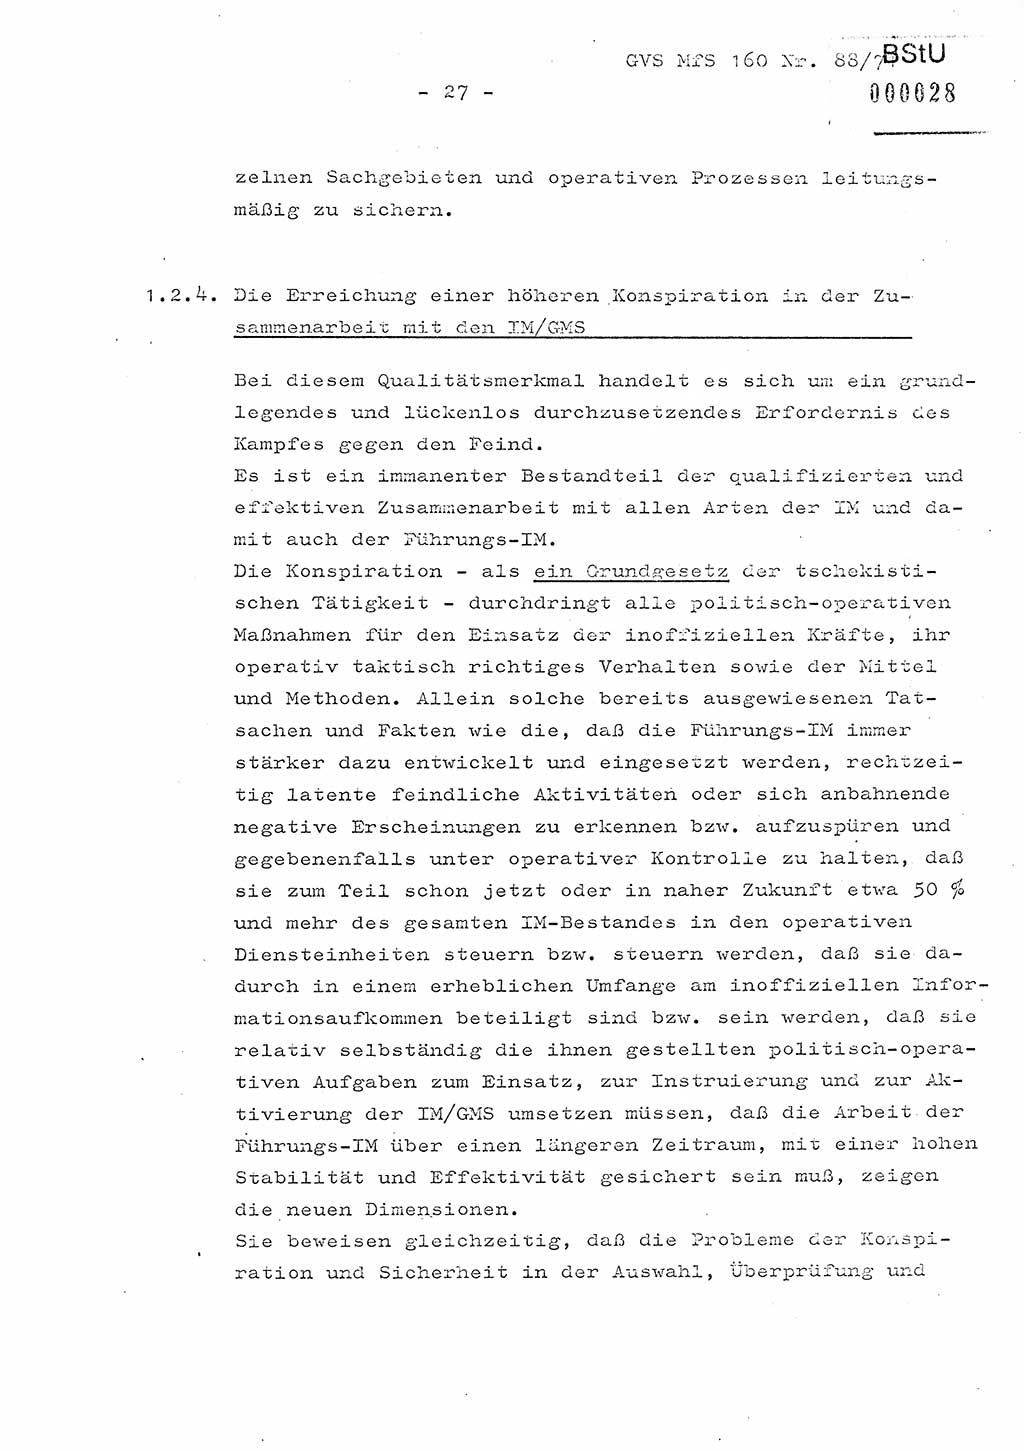 Dissertation Oberstleutnant Josef Schwarz (BV Schwerin), Major Fritz Amm (JHS), Hauptmann Peter Gräßler (JHS), Ministerium für Staatssicherheit (MfS) [Deutsche Demokratische Republik (DDR)], Juristische Hochschule (JHS), Geheime Verschlußsache (GVS) 160-88/71, Potsdam 1972, Seite 27 (Diss. MfS DDR JHS GVS 160-88/71 1972, S. 27)